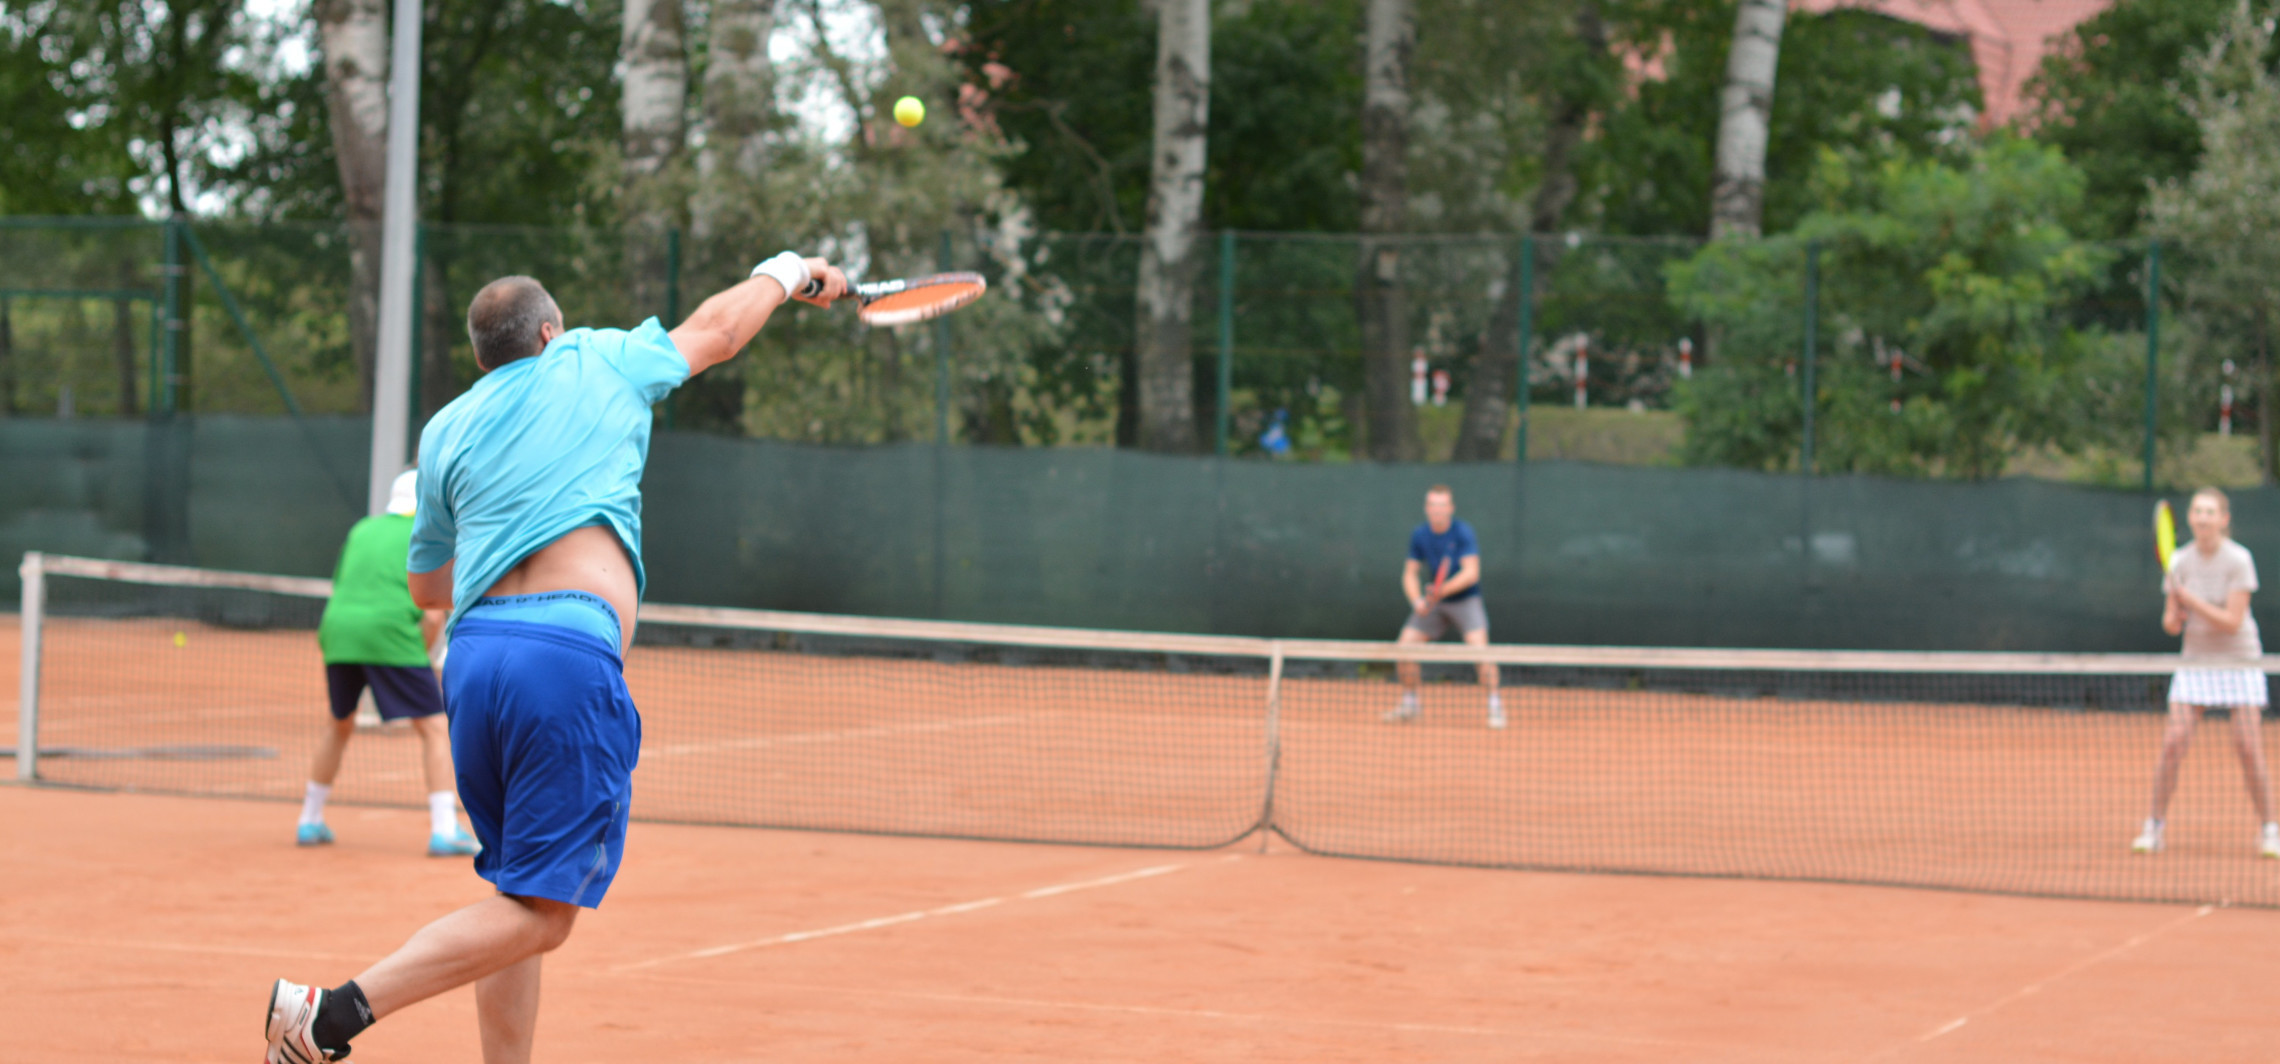 Inowrocław - 1 maja otwierają korty tenisowe